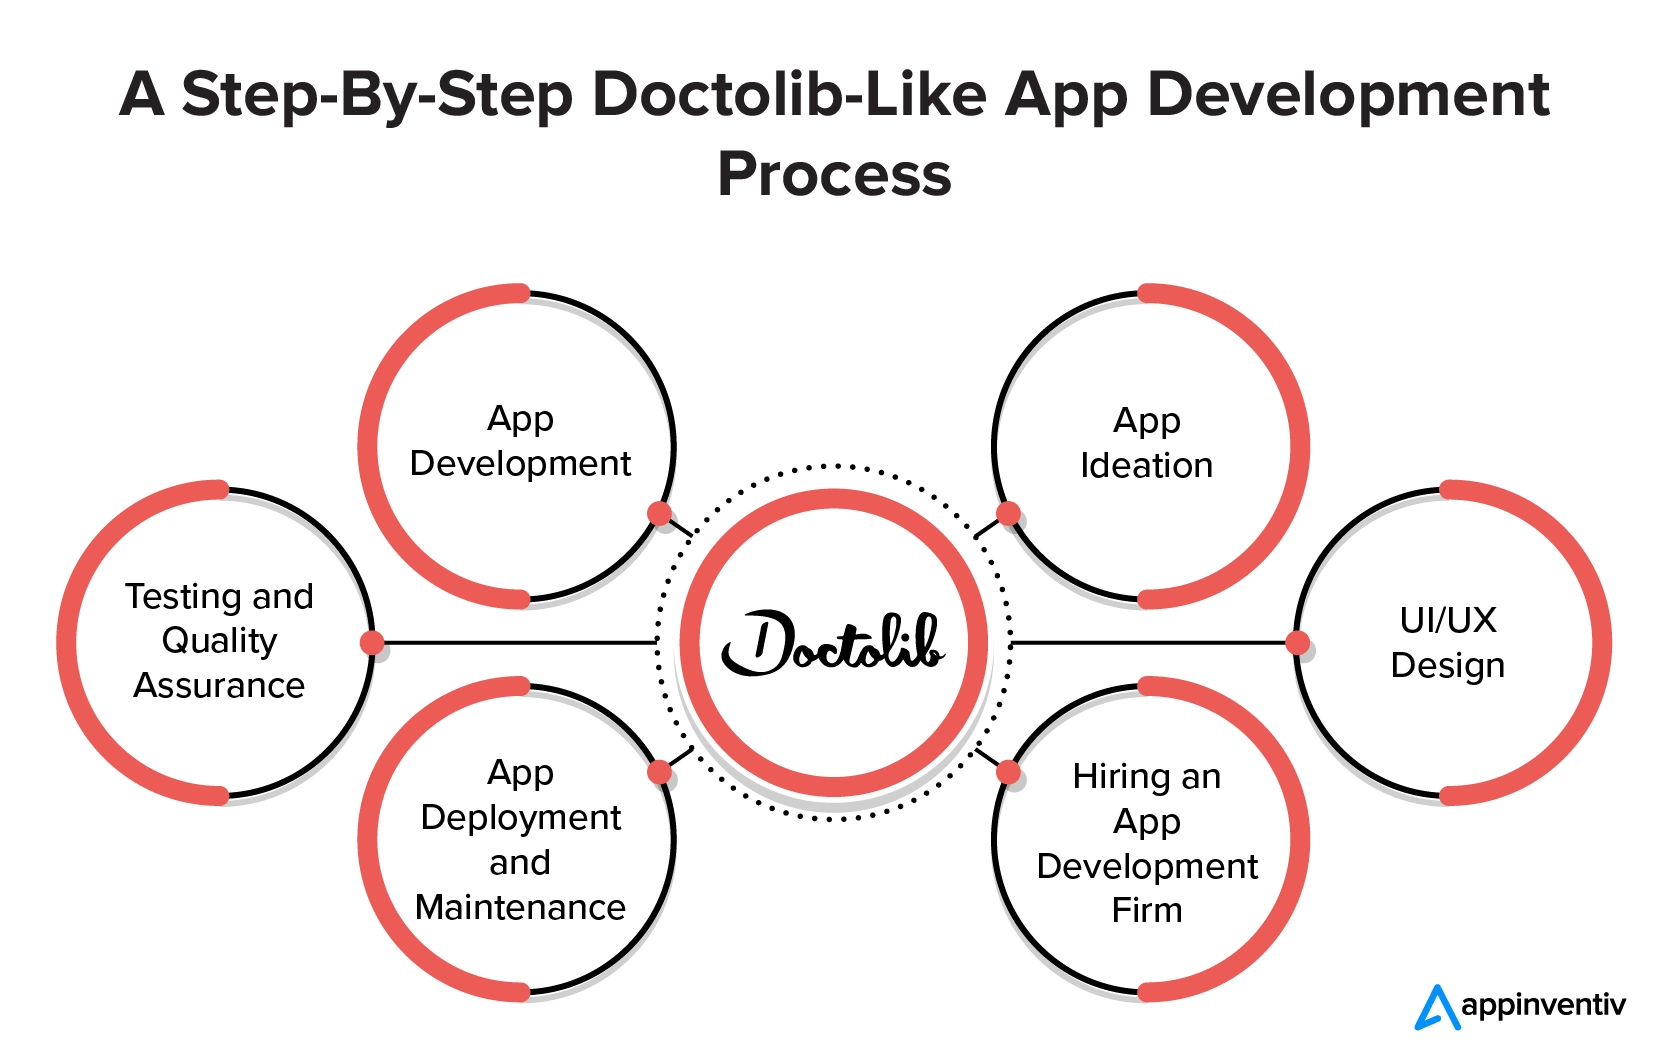 Ein schrittweiser Doctolib-ähnlicher App-Entwicklungsprozess